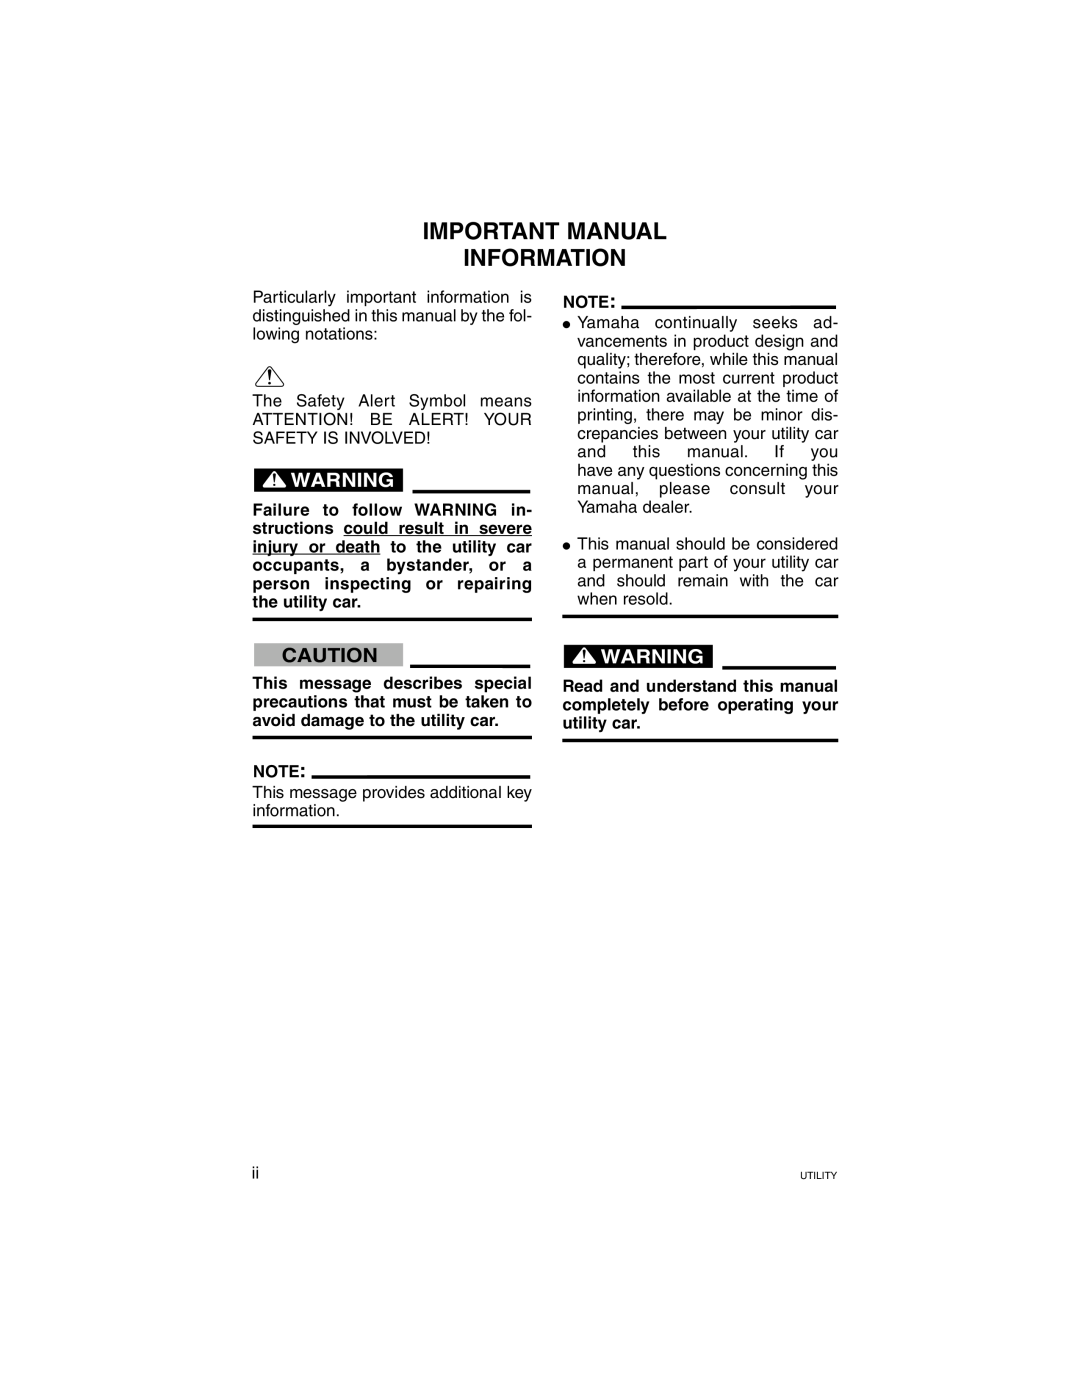 Yamaha G21A manual Important Manual Information 